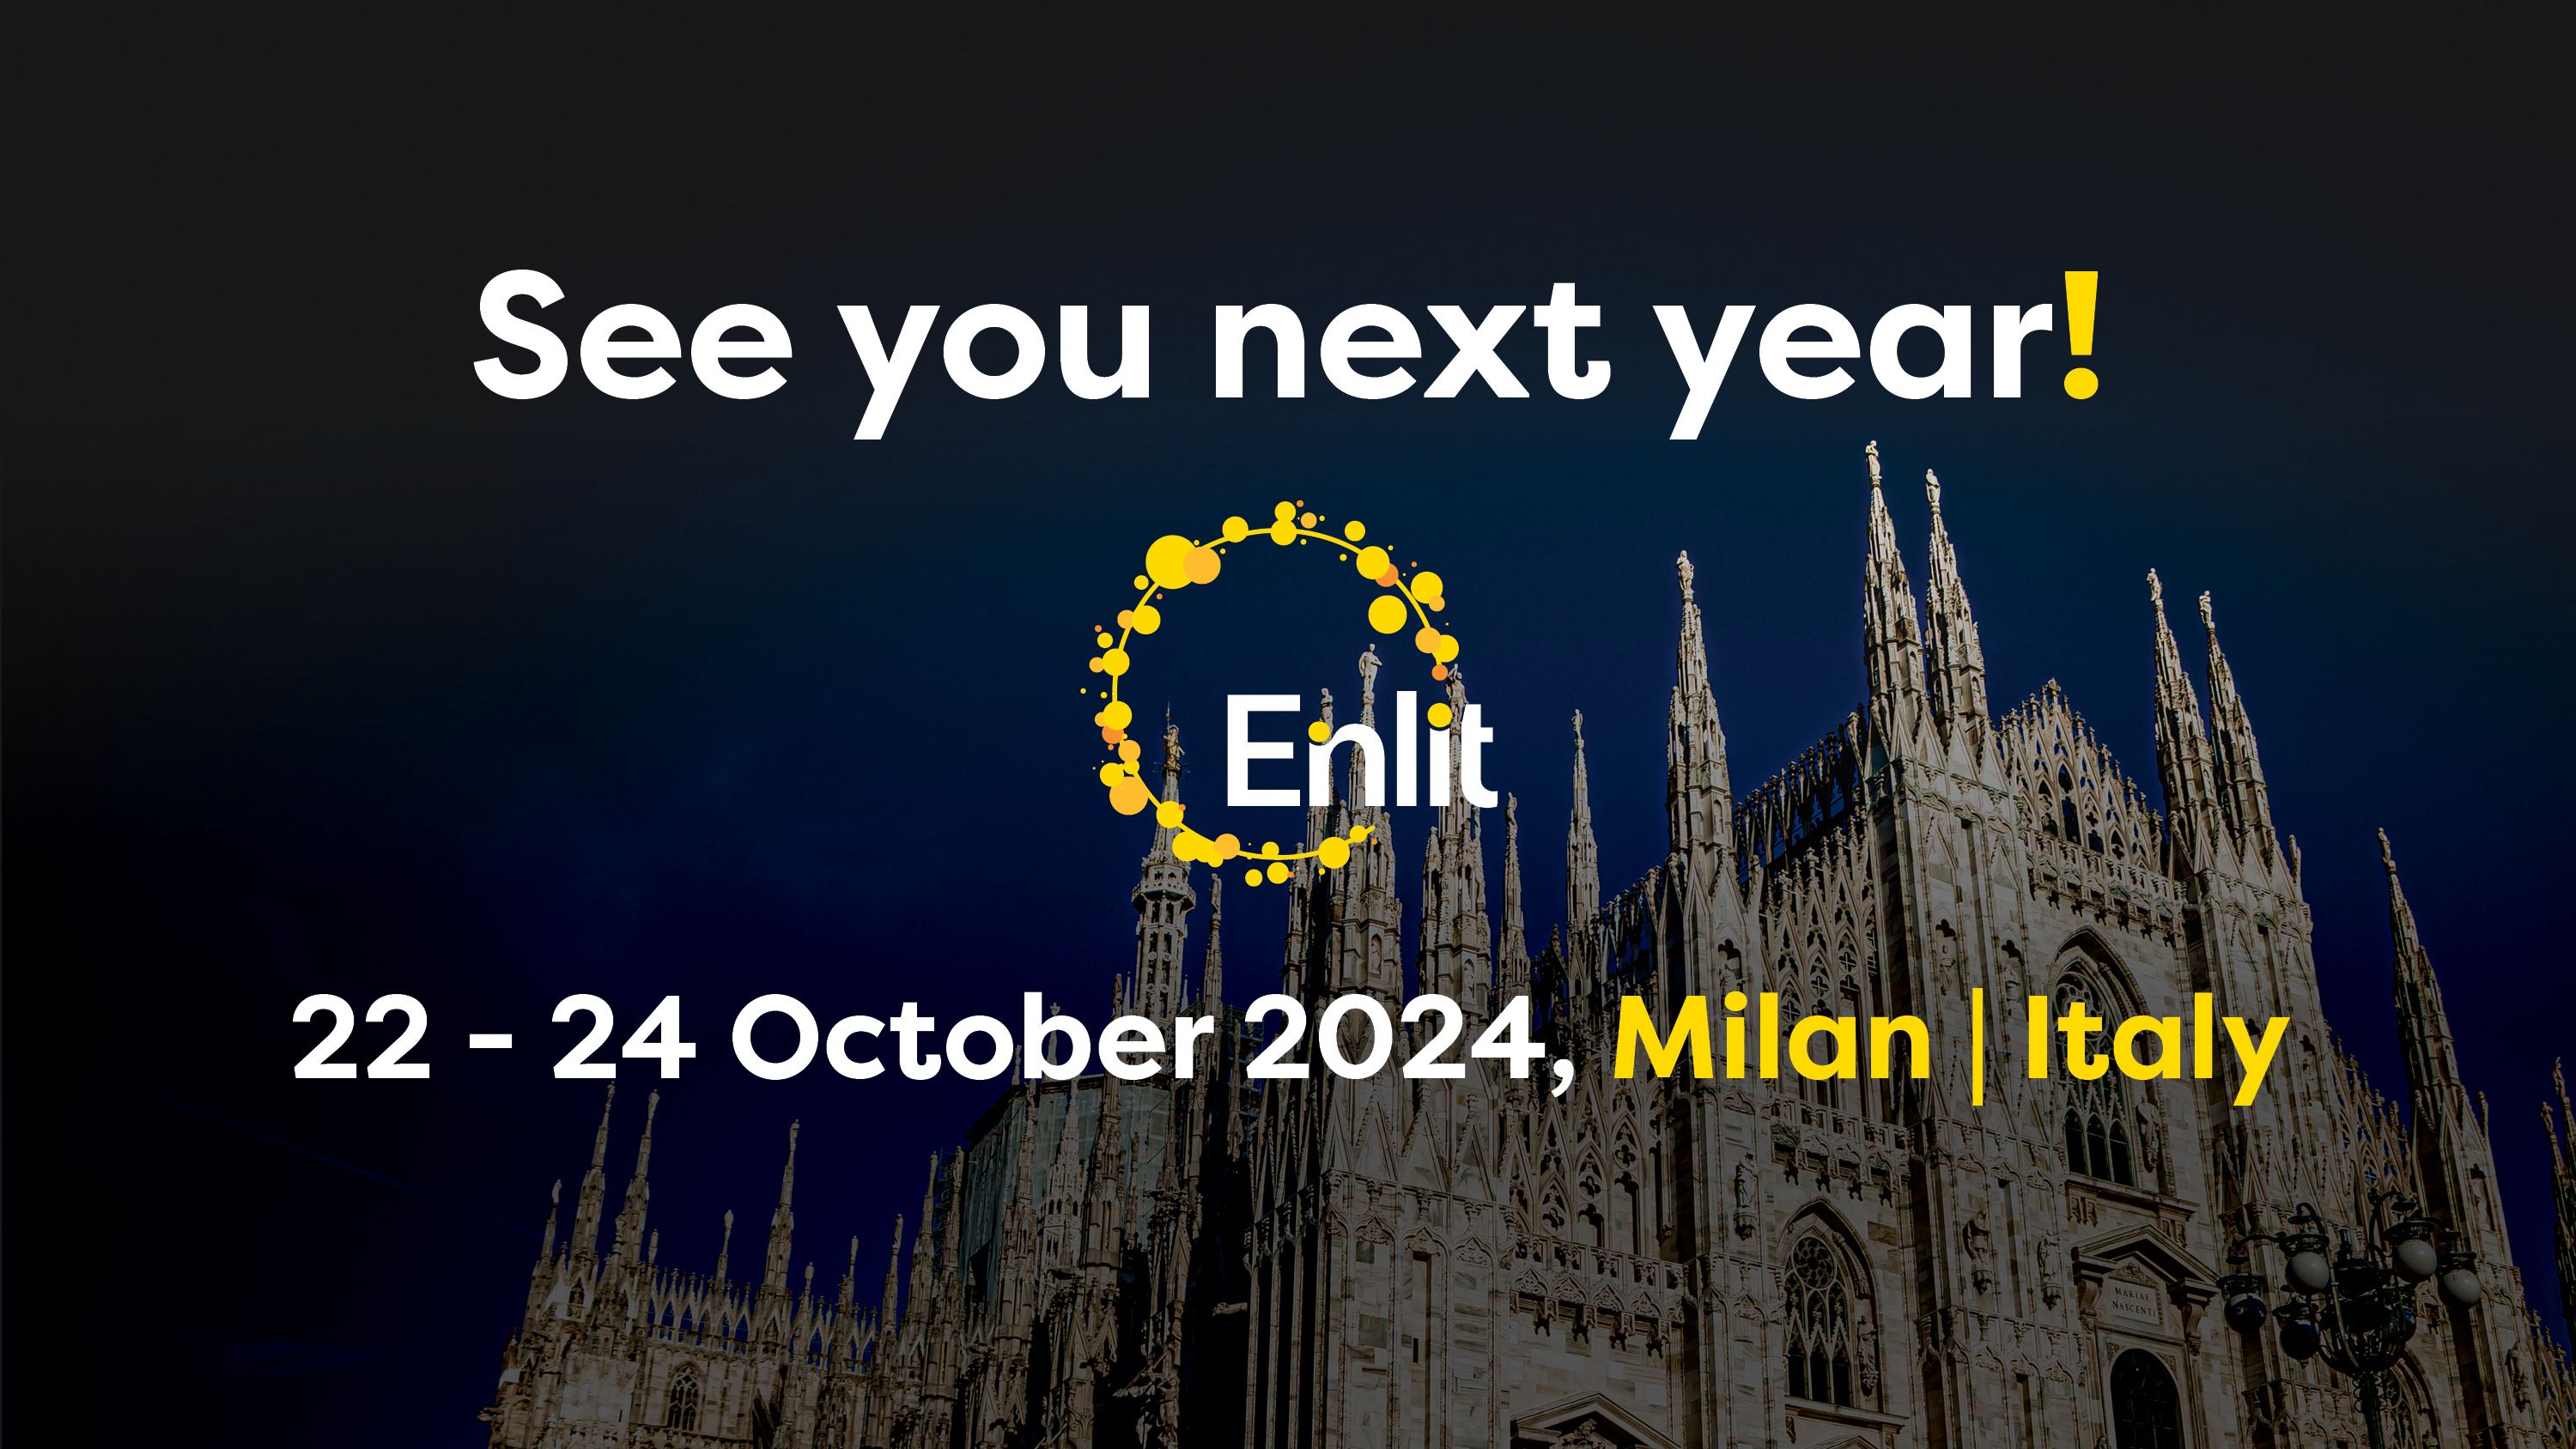 Enlit Europe 2024 Milan